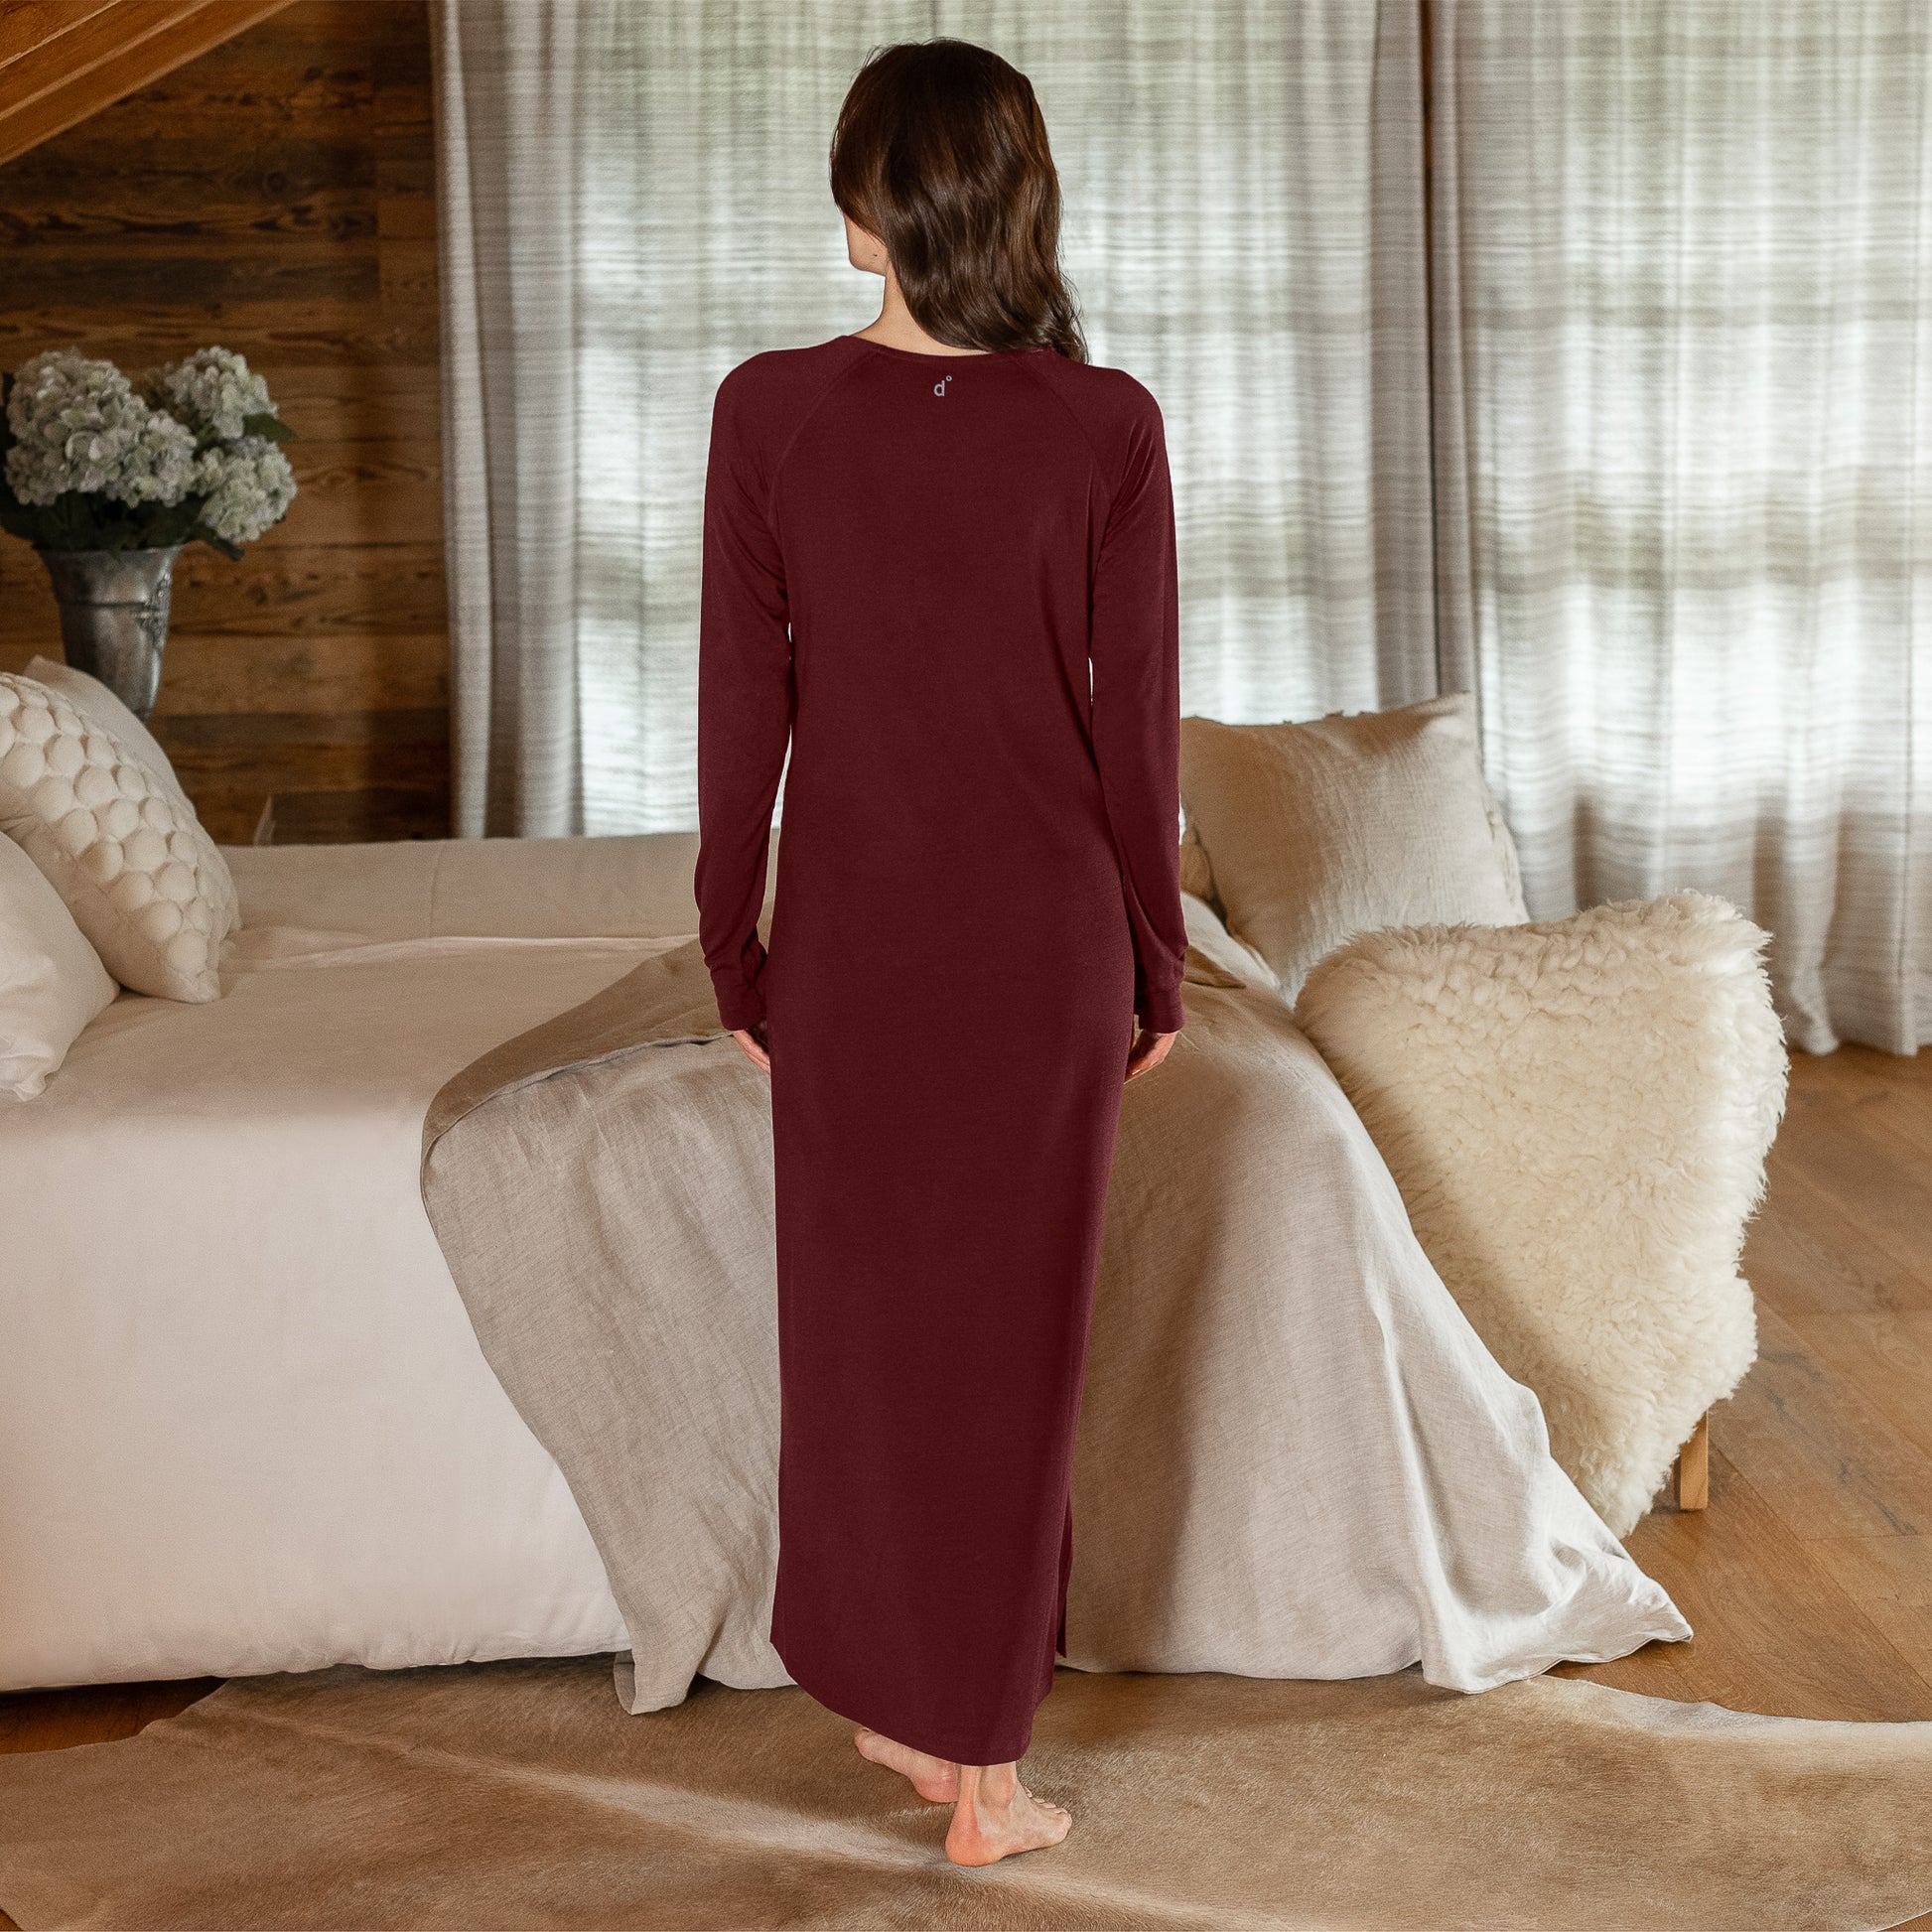 Merino nightgown || Deep burgundy